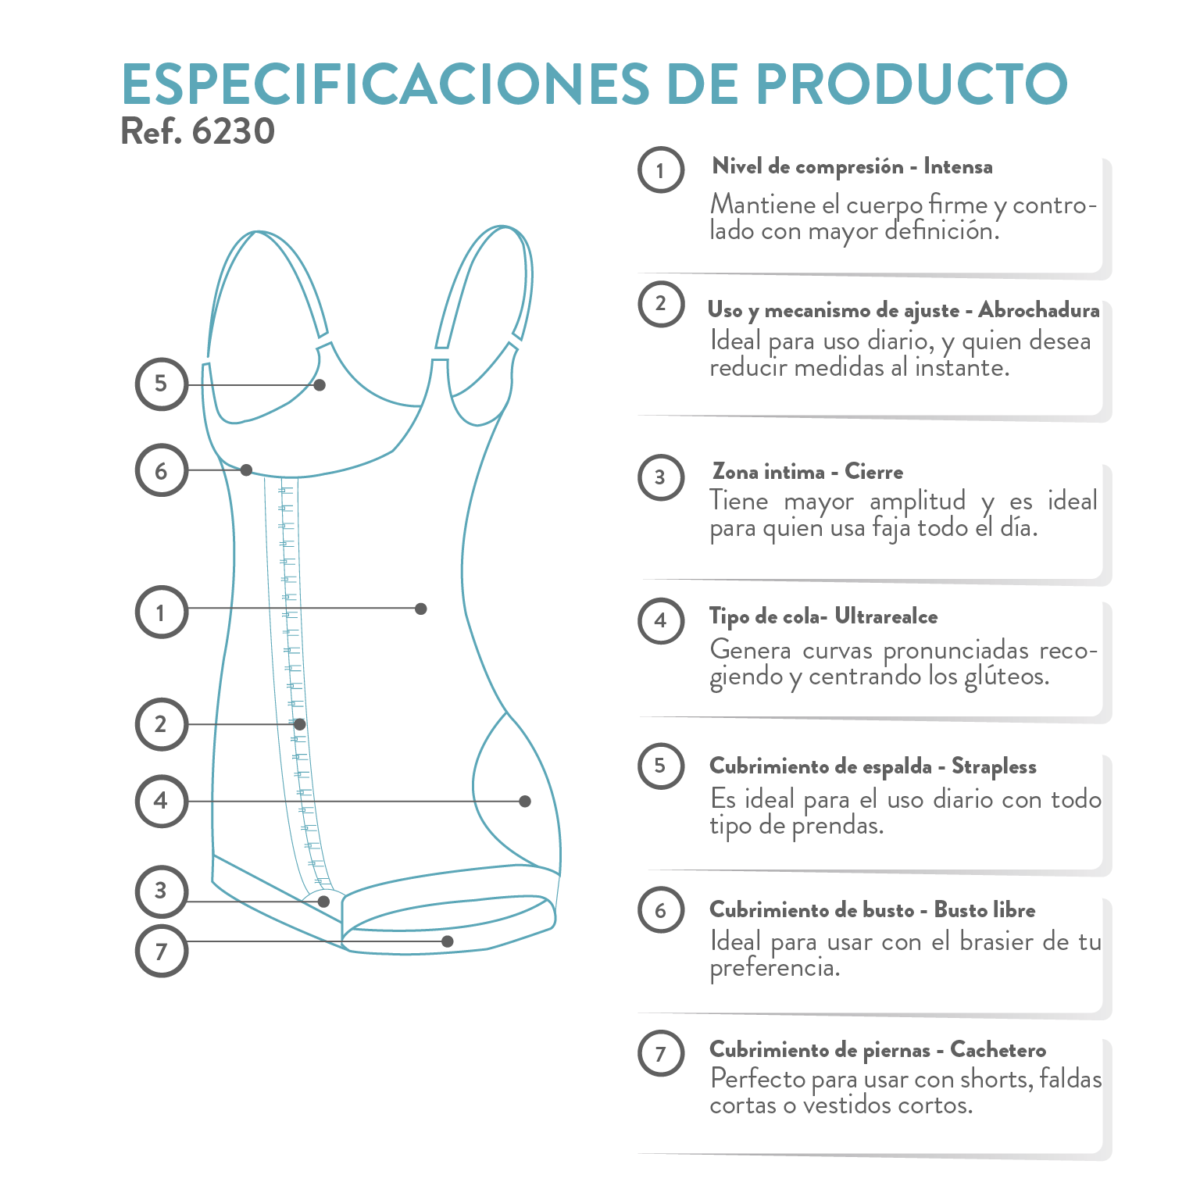 La faja colombiana ultra realce reduce tallas al instante, moldea y levanta los glúteos. Es ideal para uso diario y postquirúrgico.